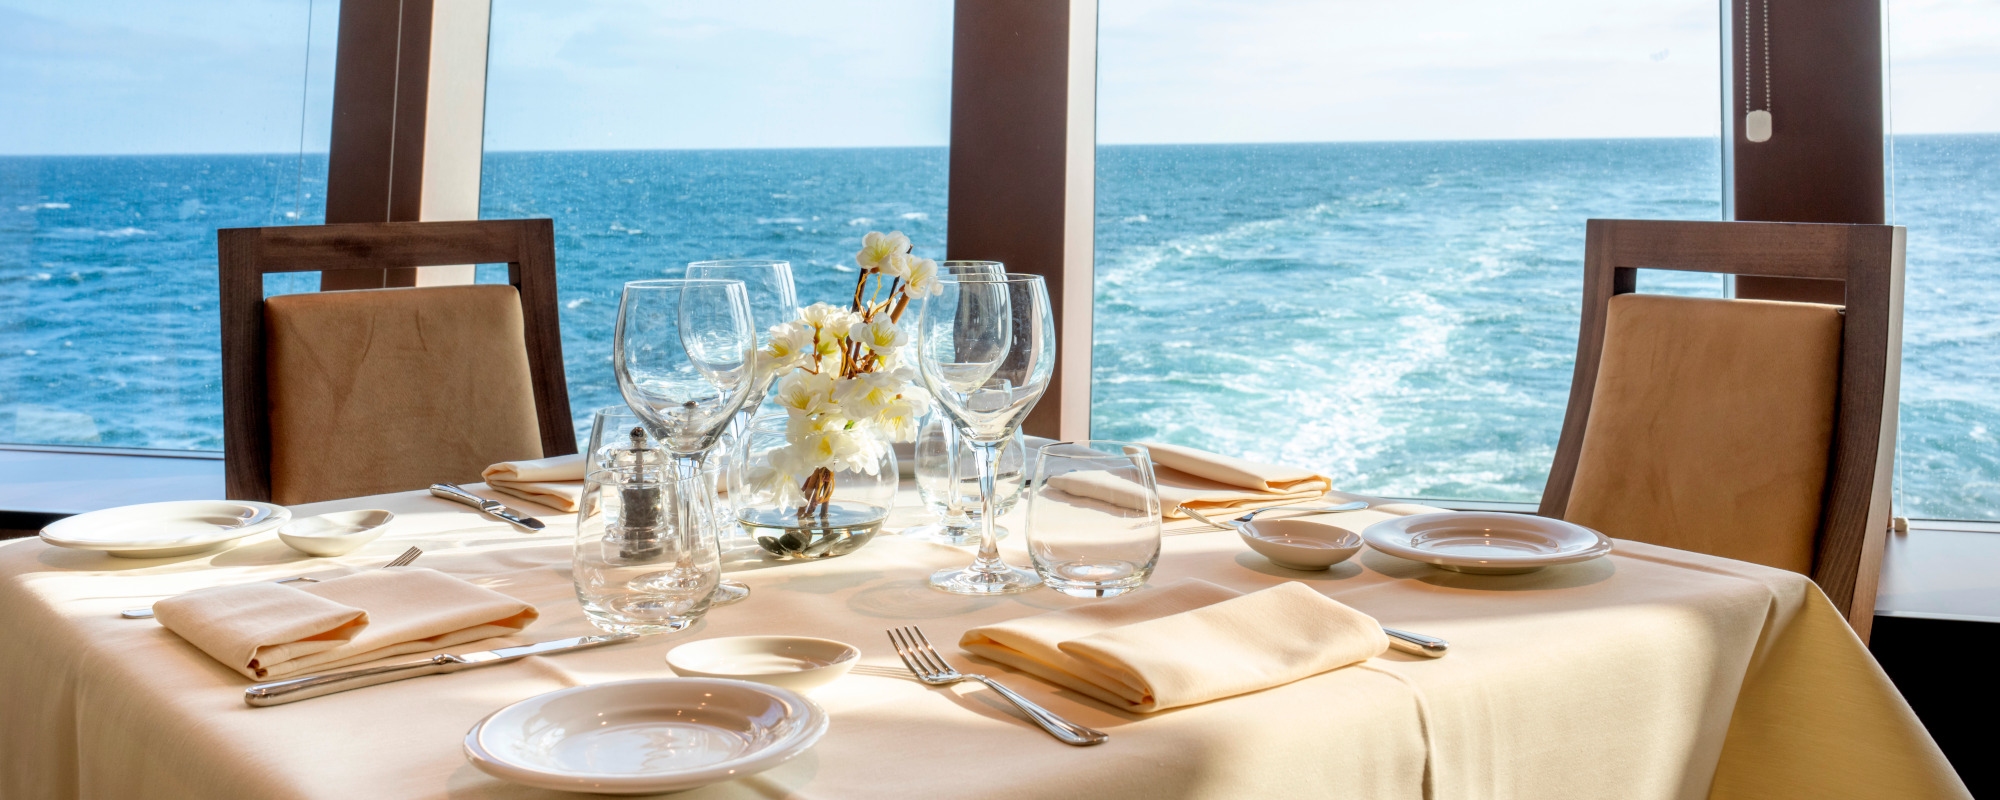 Blick auf gedeckten Tisch im Restaurant der MSC Euribia mit Ausblick auf blaues Meer